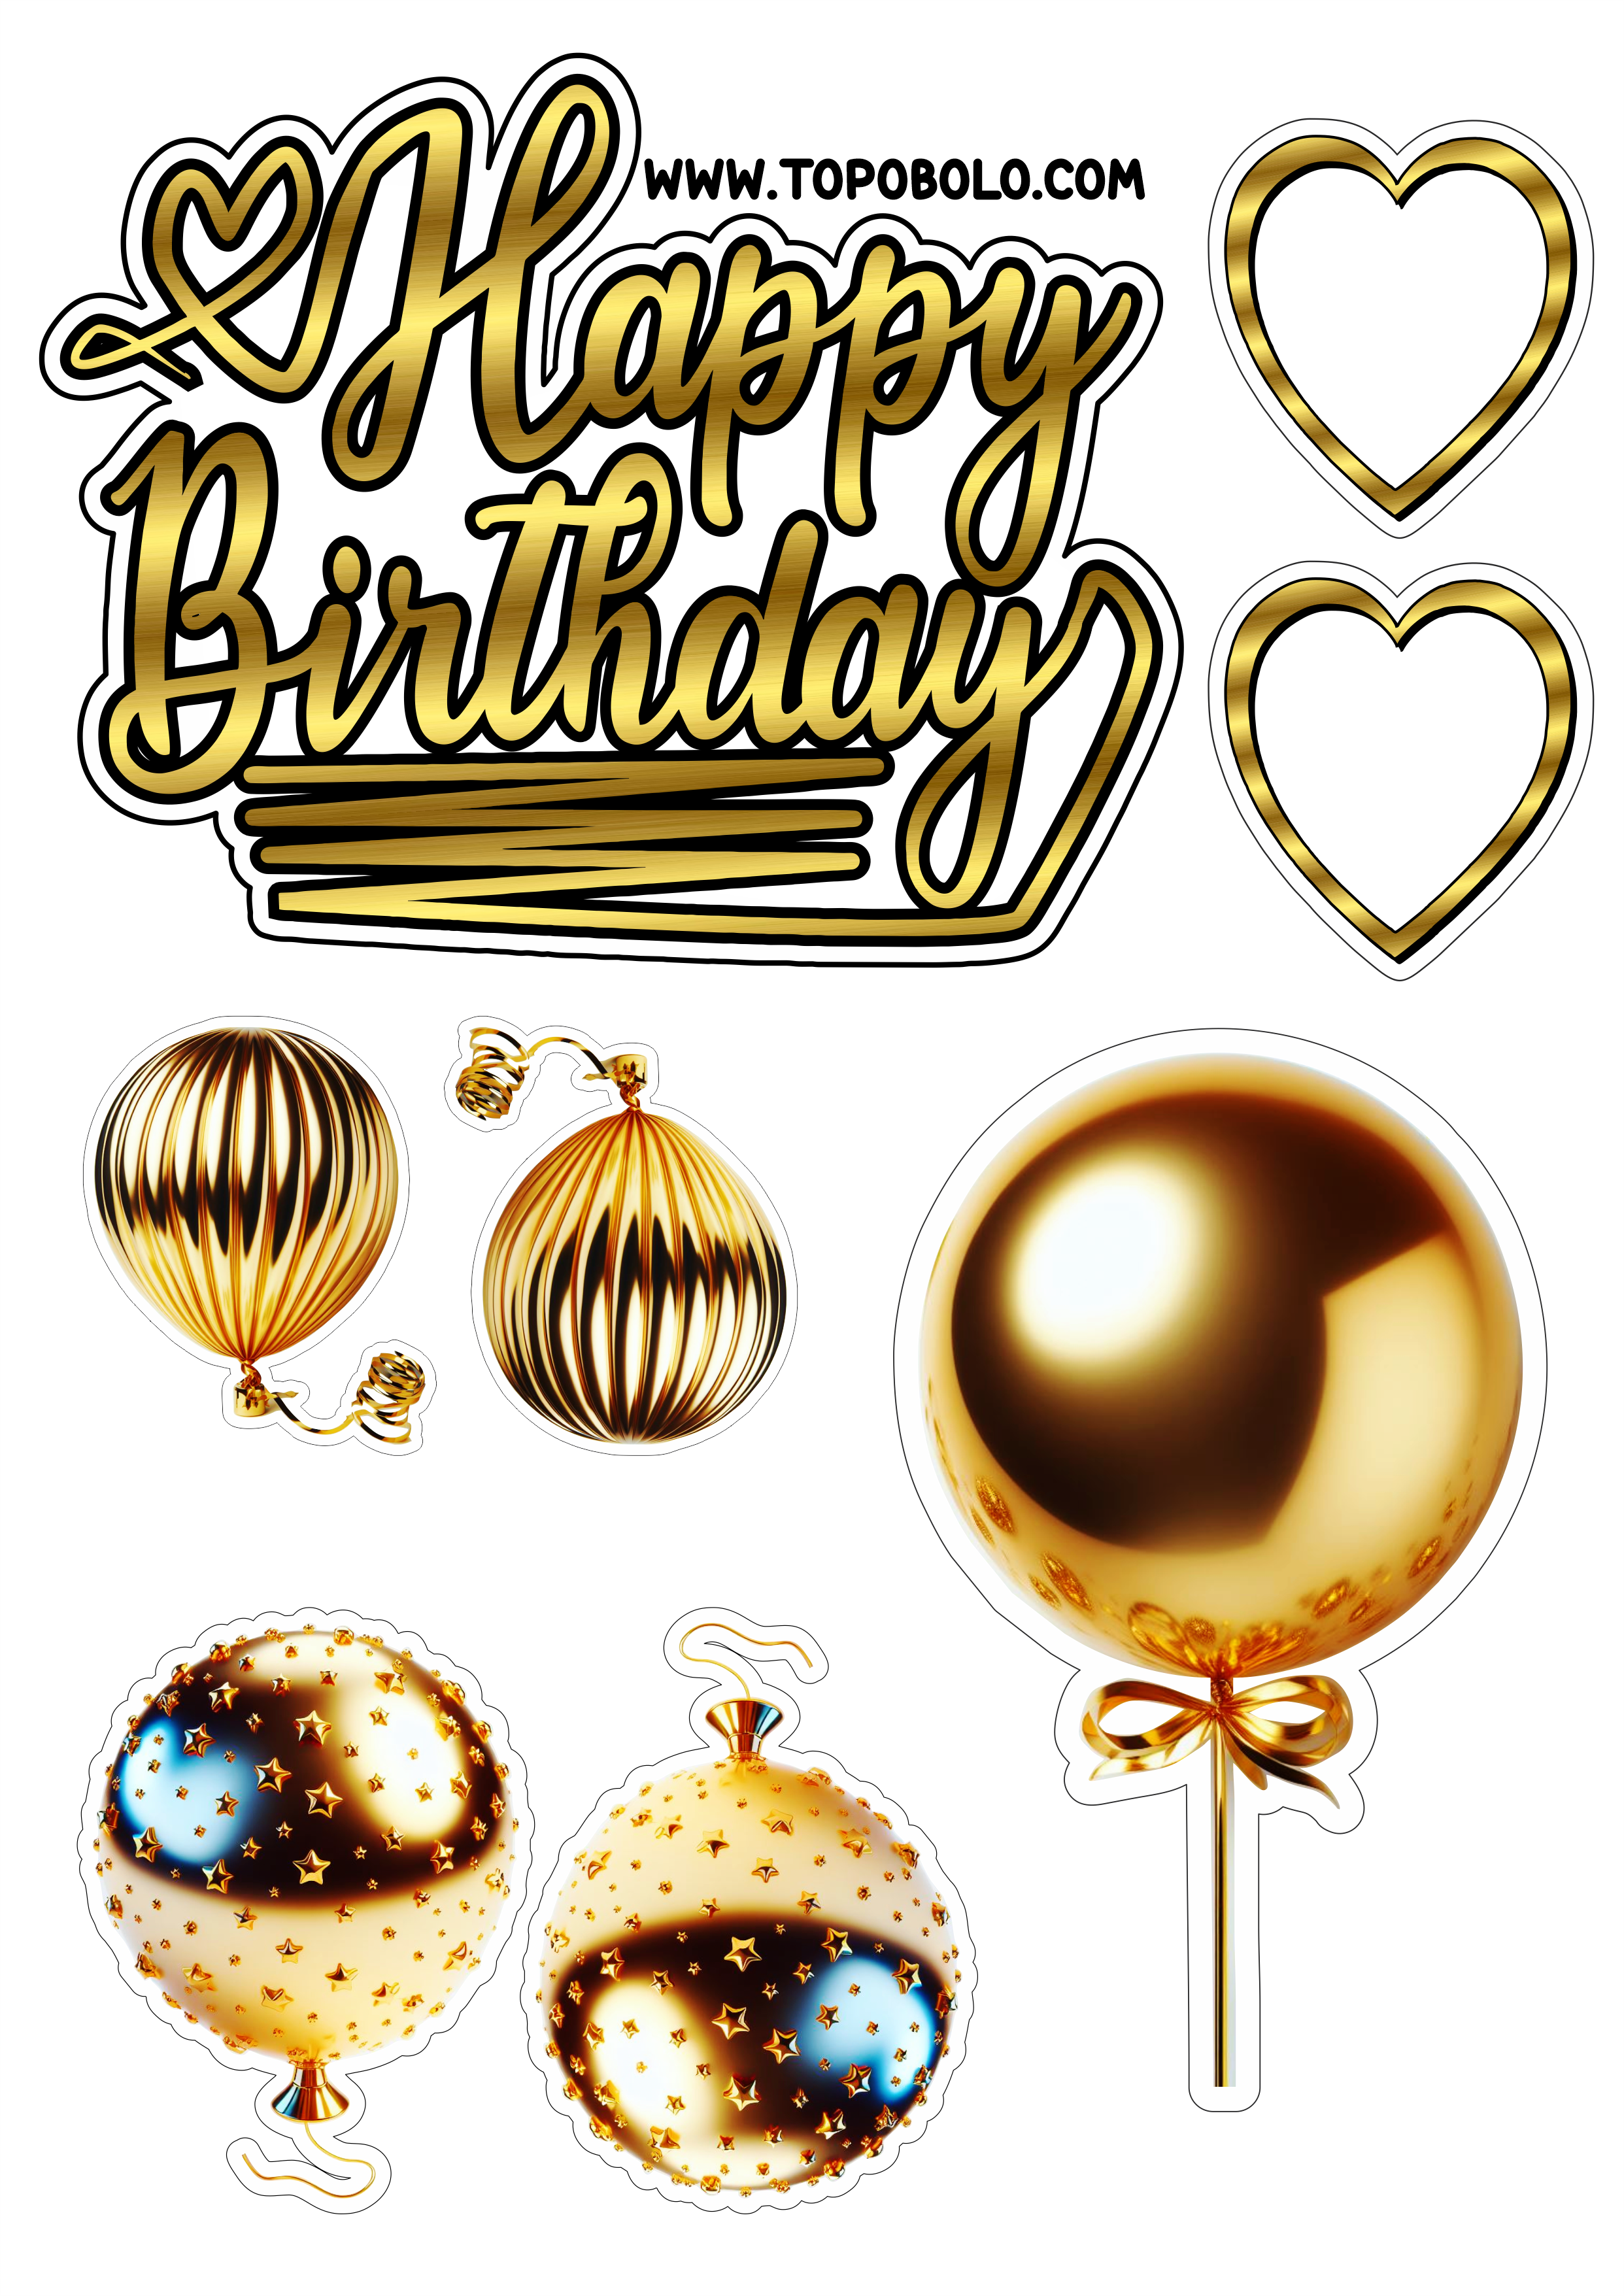 Topo de bolo para imprimir Happy Birthday aniversário dourado com corações e balões artigos personalizados grátis festa pronta png